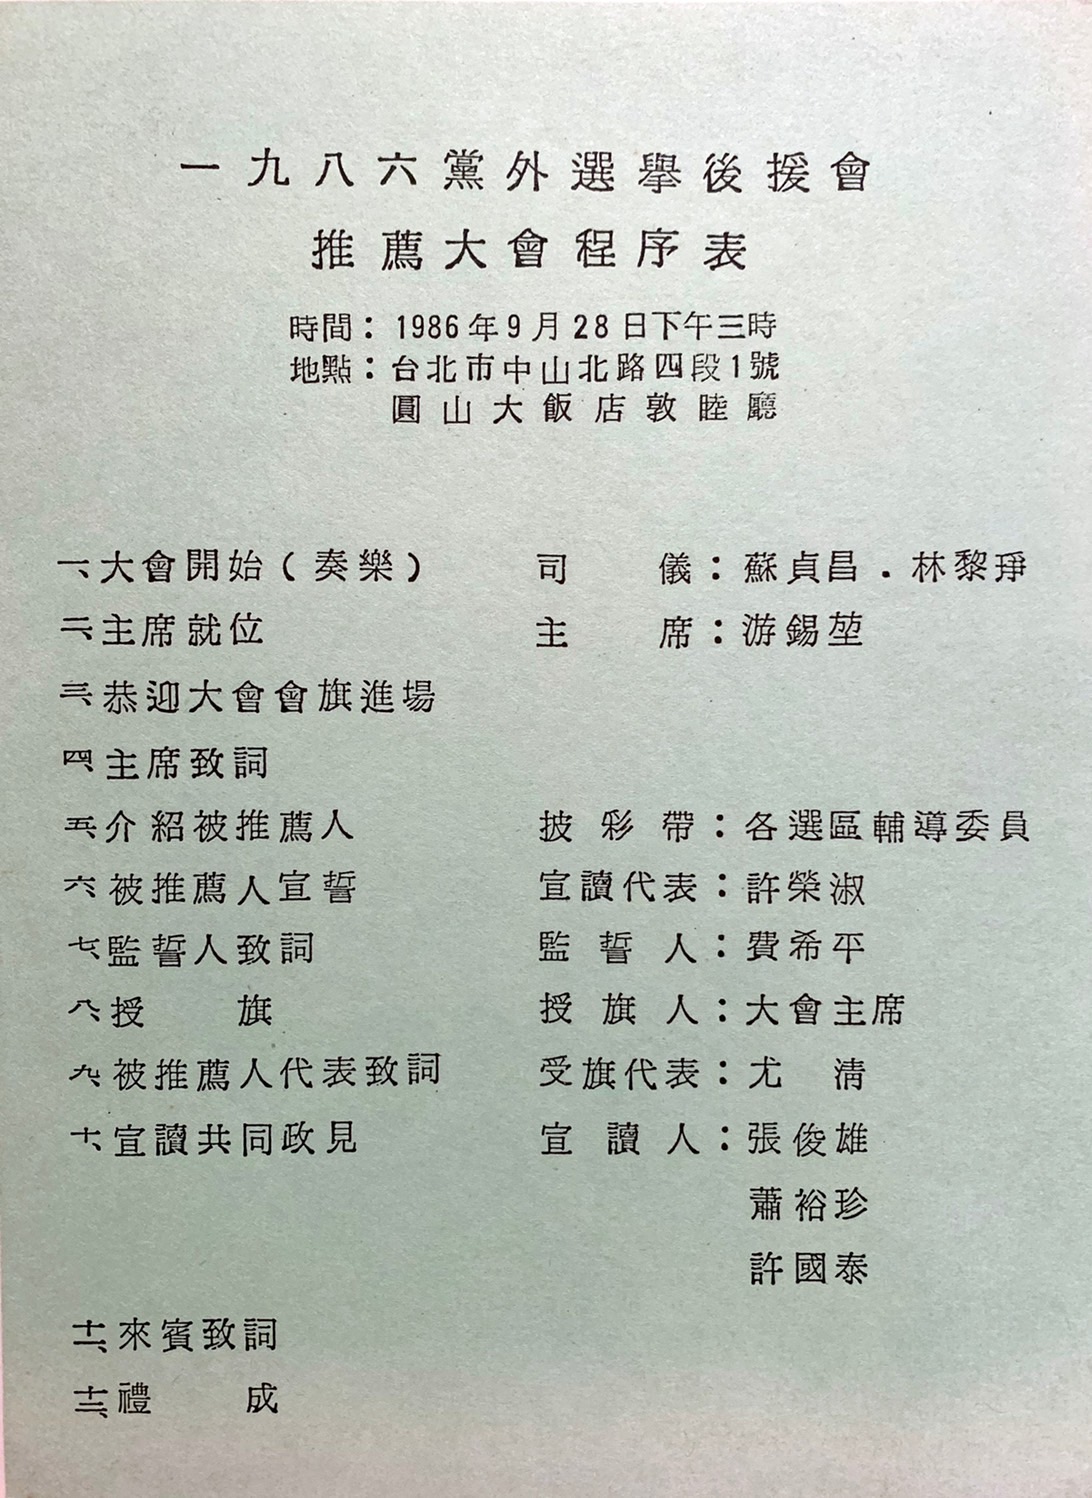 1986年黨外選舉後援會推薦大會程序表。   圖：邱萬興設計/提供